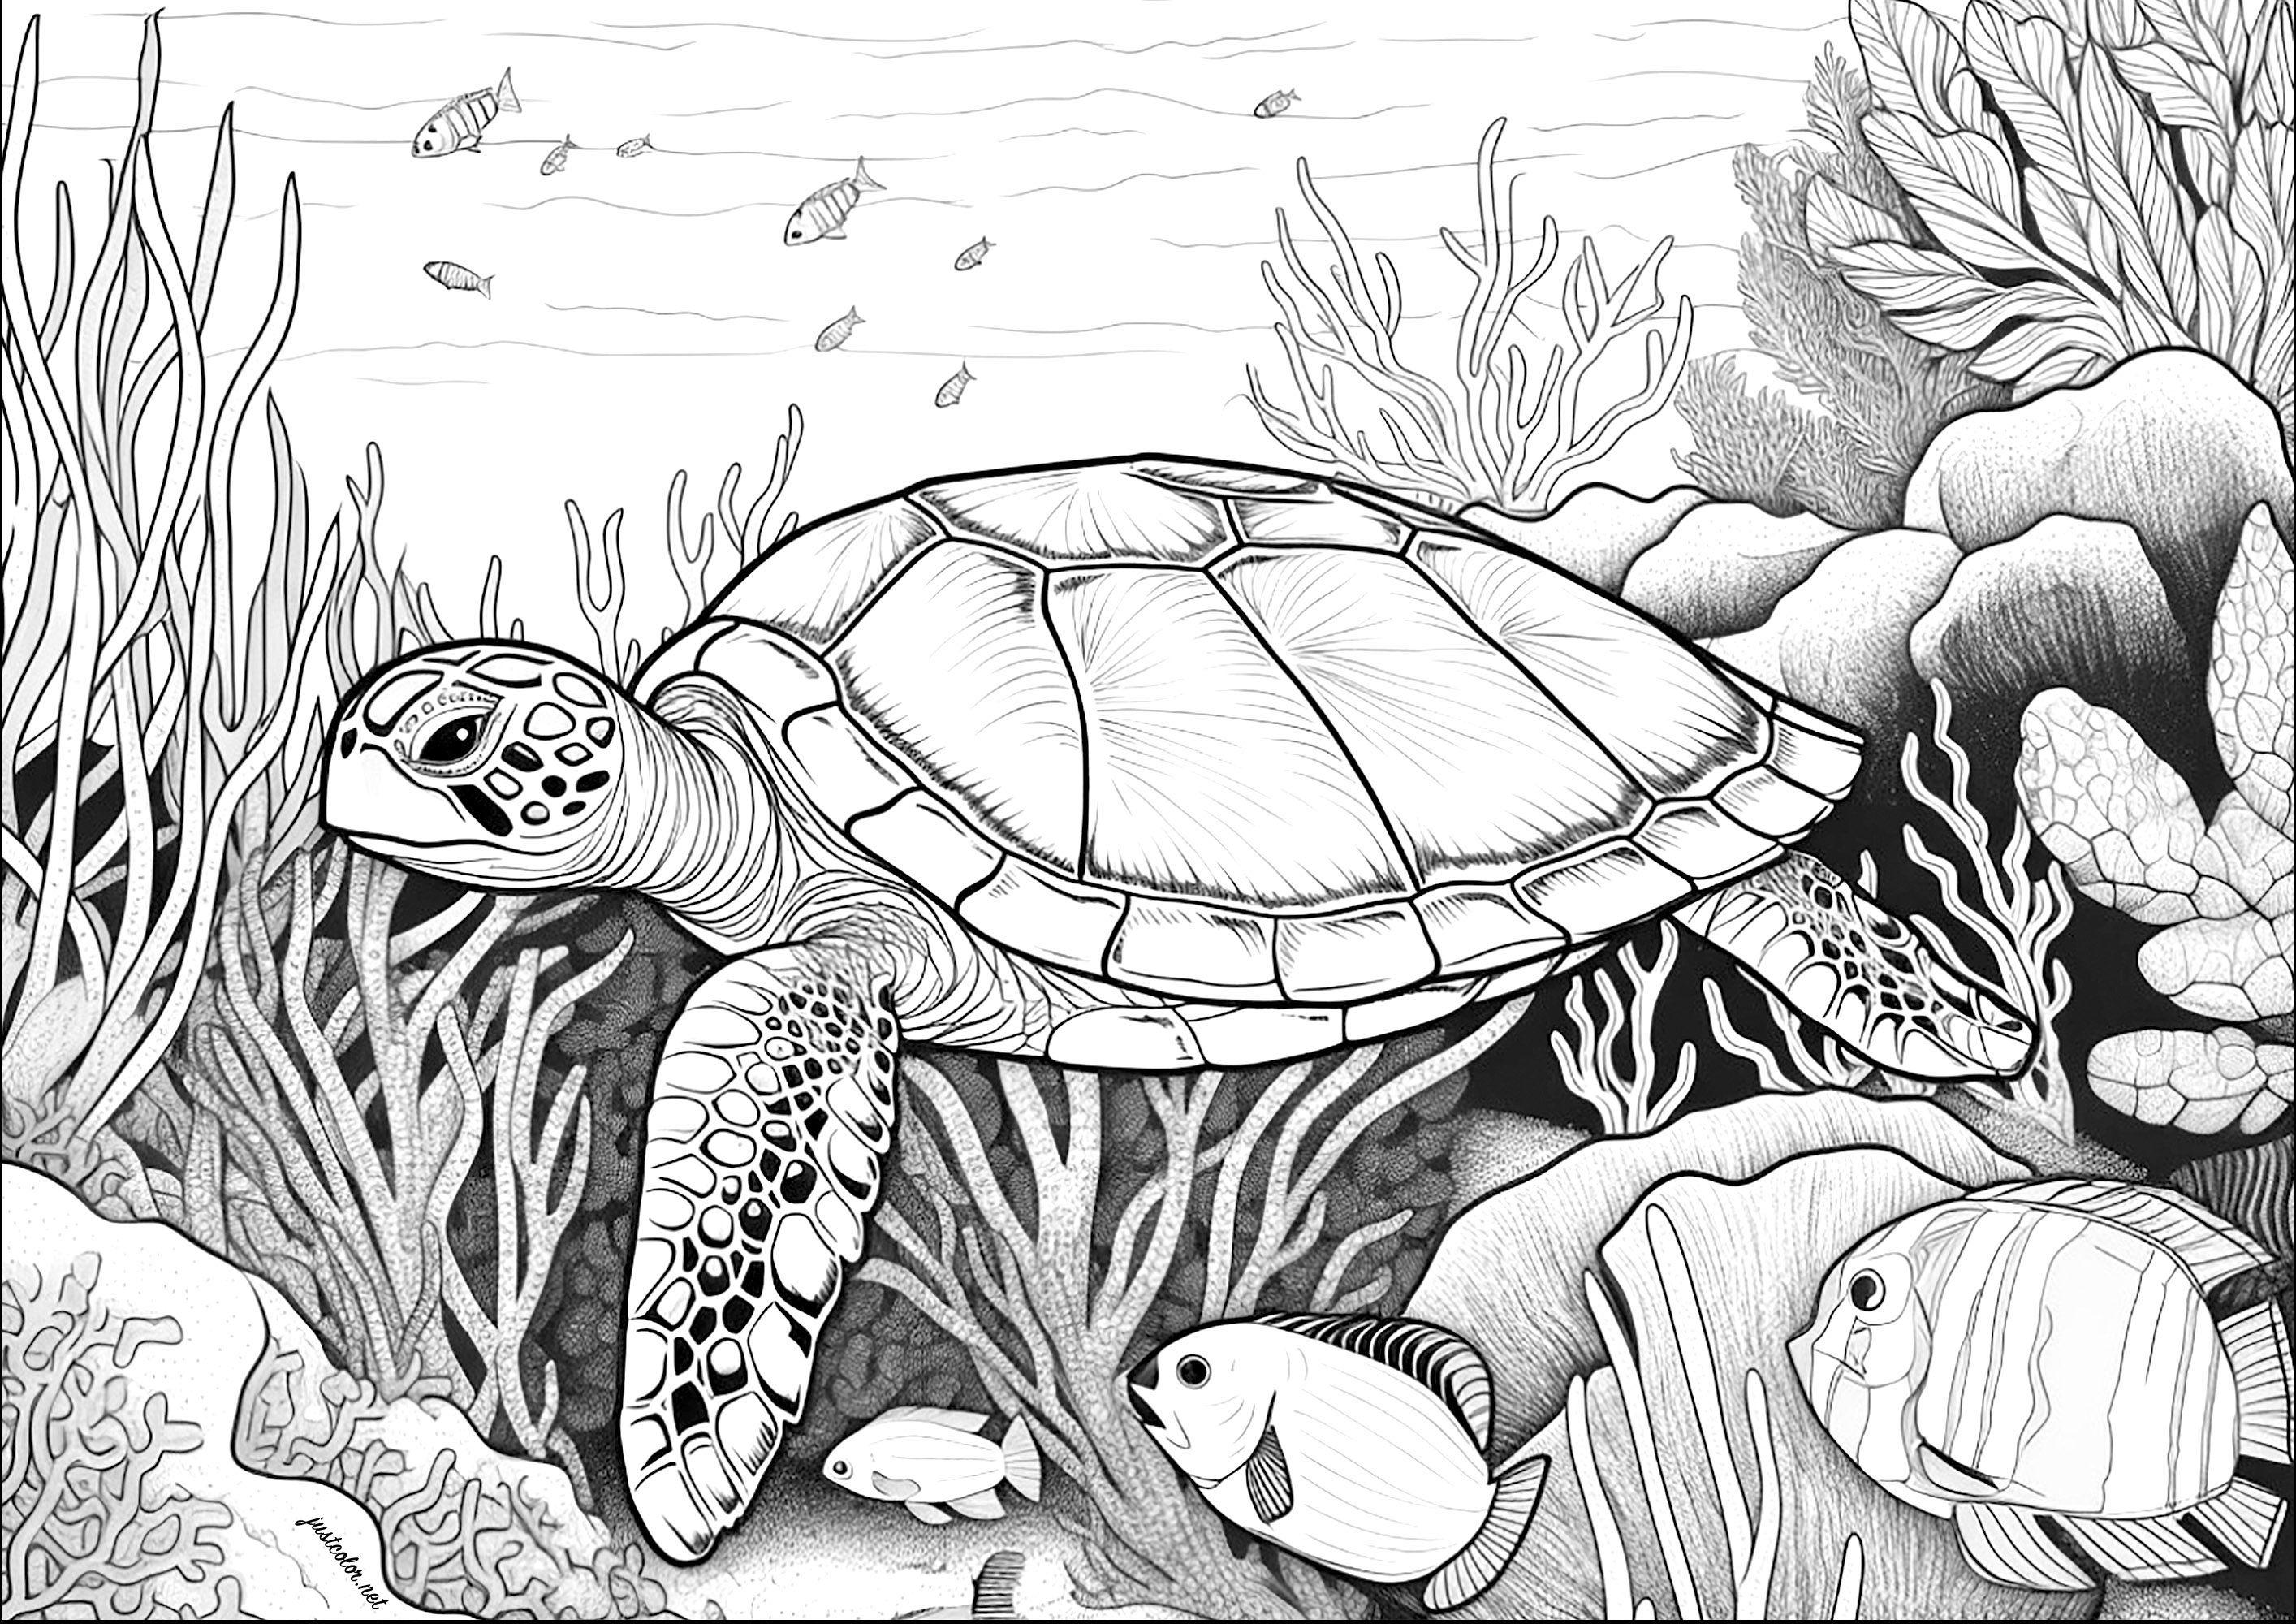 Gran tortuga nadando en el fondo del mar. Colorea también los bonitos peces, corales y algas